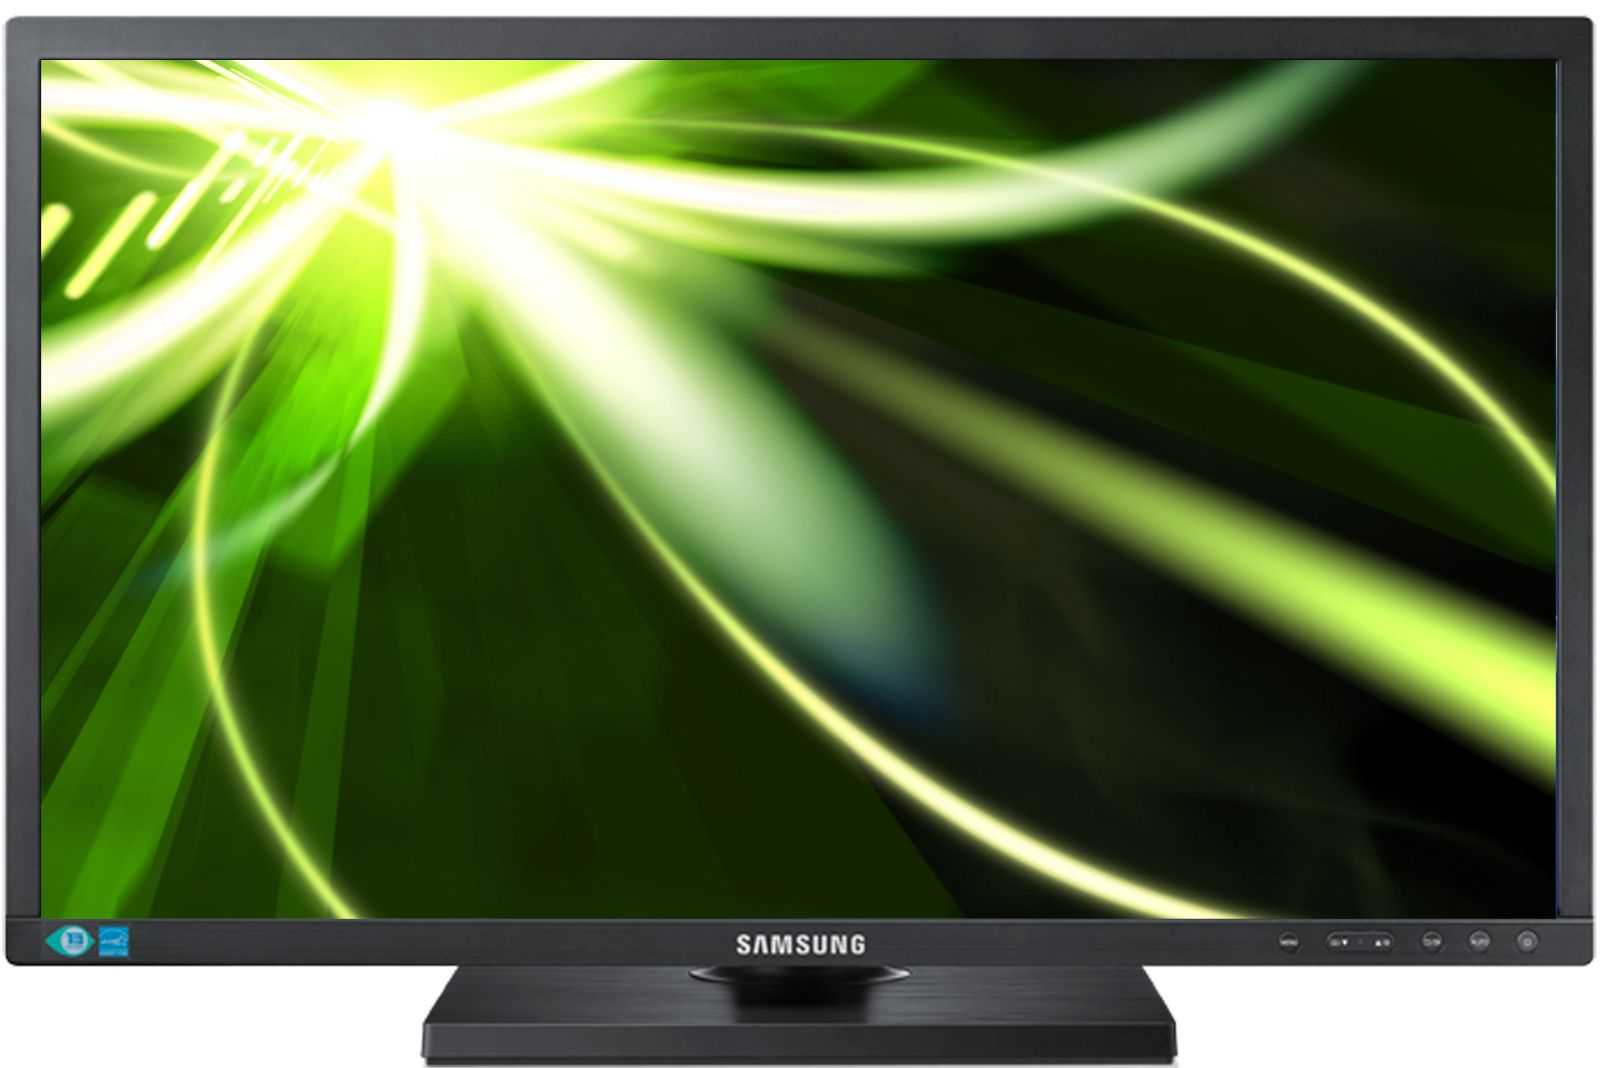 Samsung s22c450b (черный) - купить , скидки, цена, отзывы, обзор, характеристики - мониторы